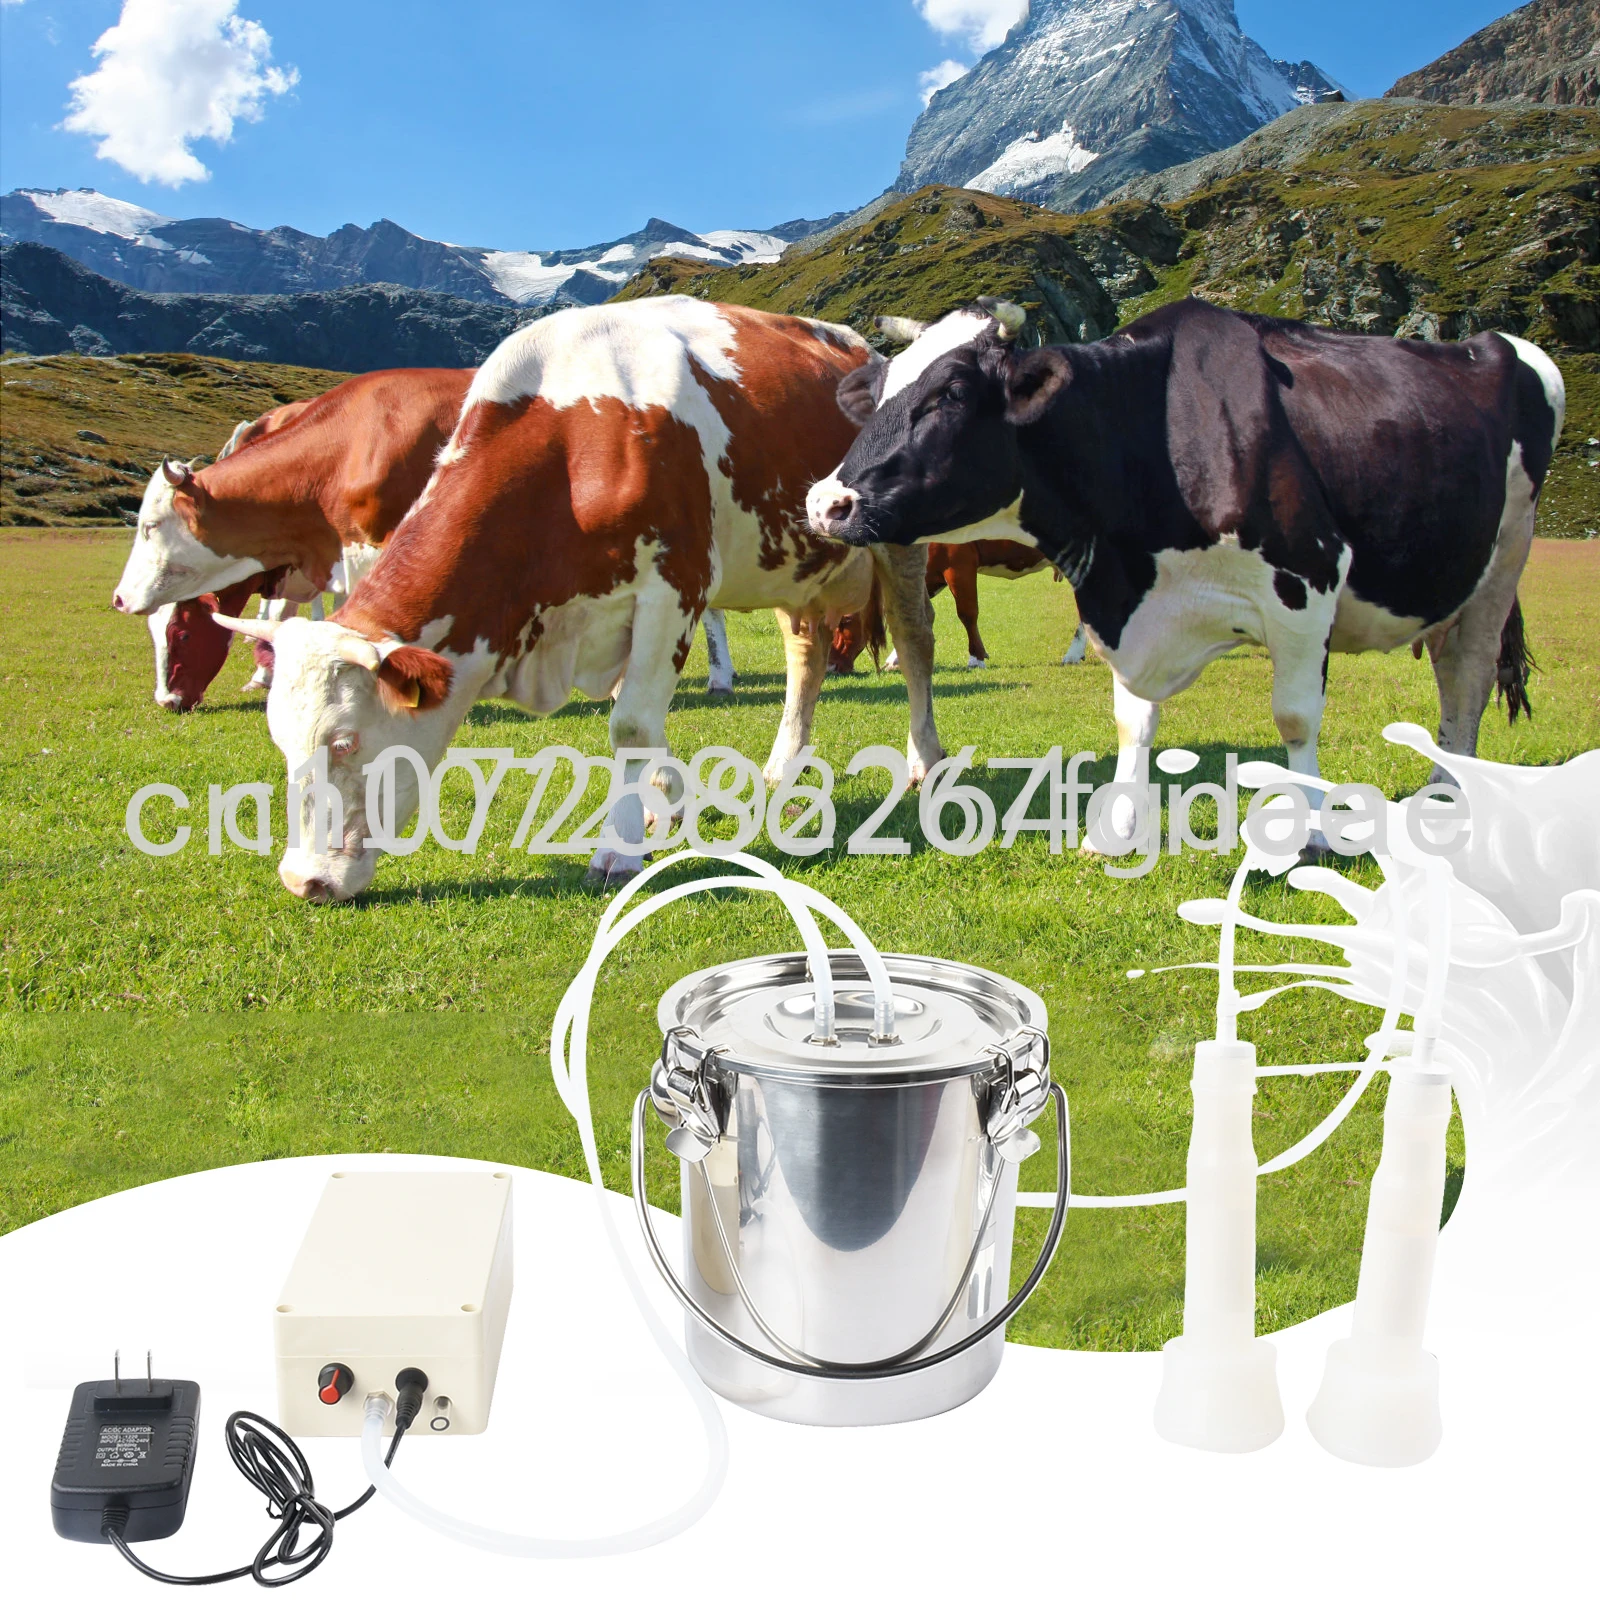 

Электрическая Доильная машина 3 л, доильный станок из нержавеющей стали, вакуумный доильный насос для фермы, коровы, козы, автоматическое доильное оборудование для крупного рогатого скота